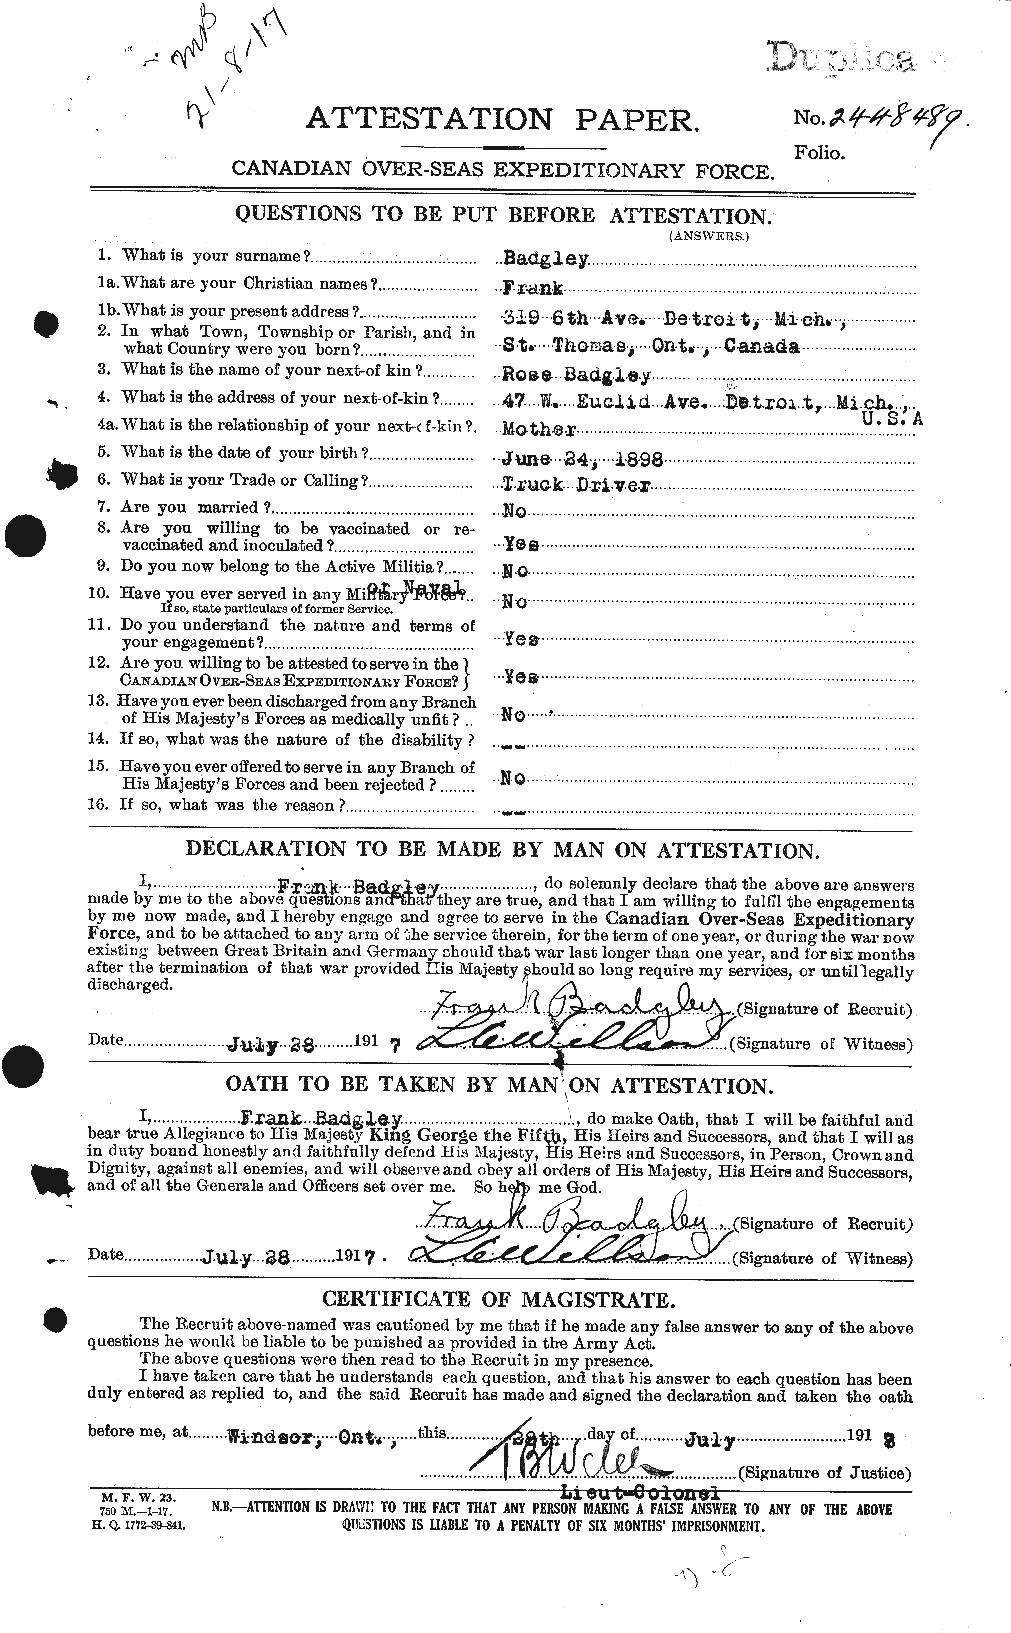 Dossiers du Personnel de la Première Guerre mondiale - CEC 217729a